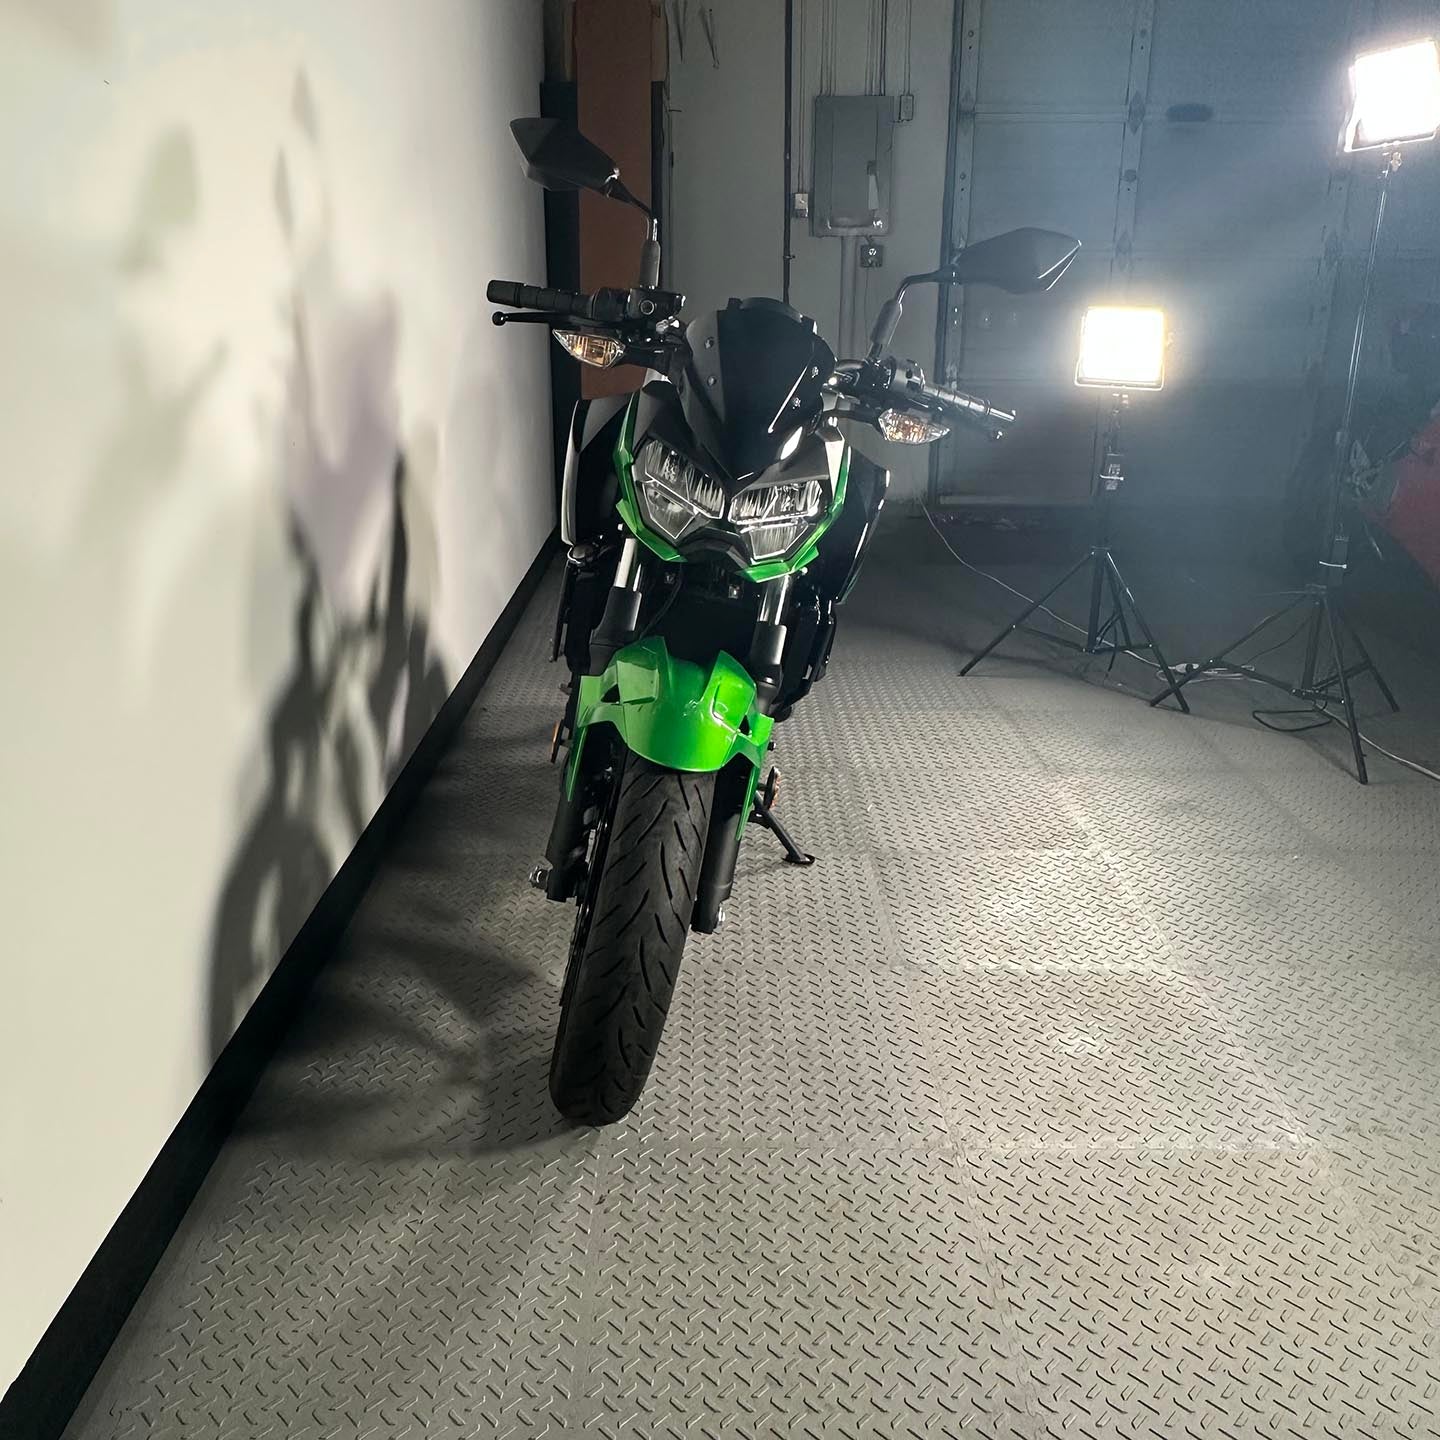 2019 Kawasaki Z400 Abs (817 Miles)